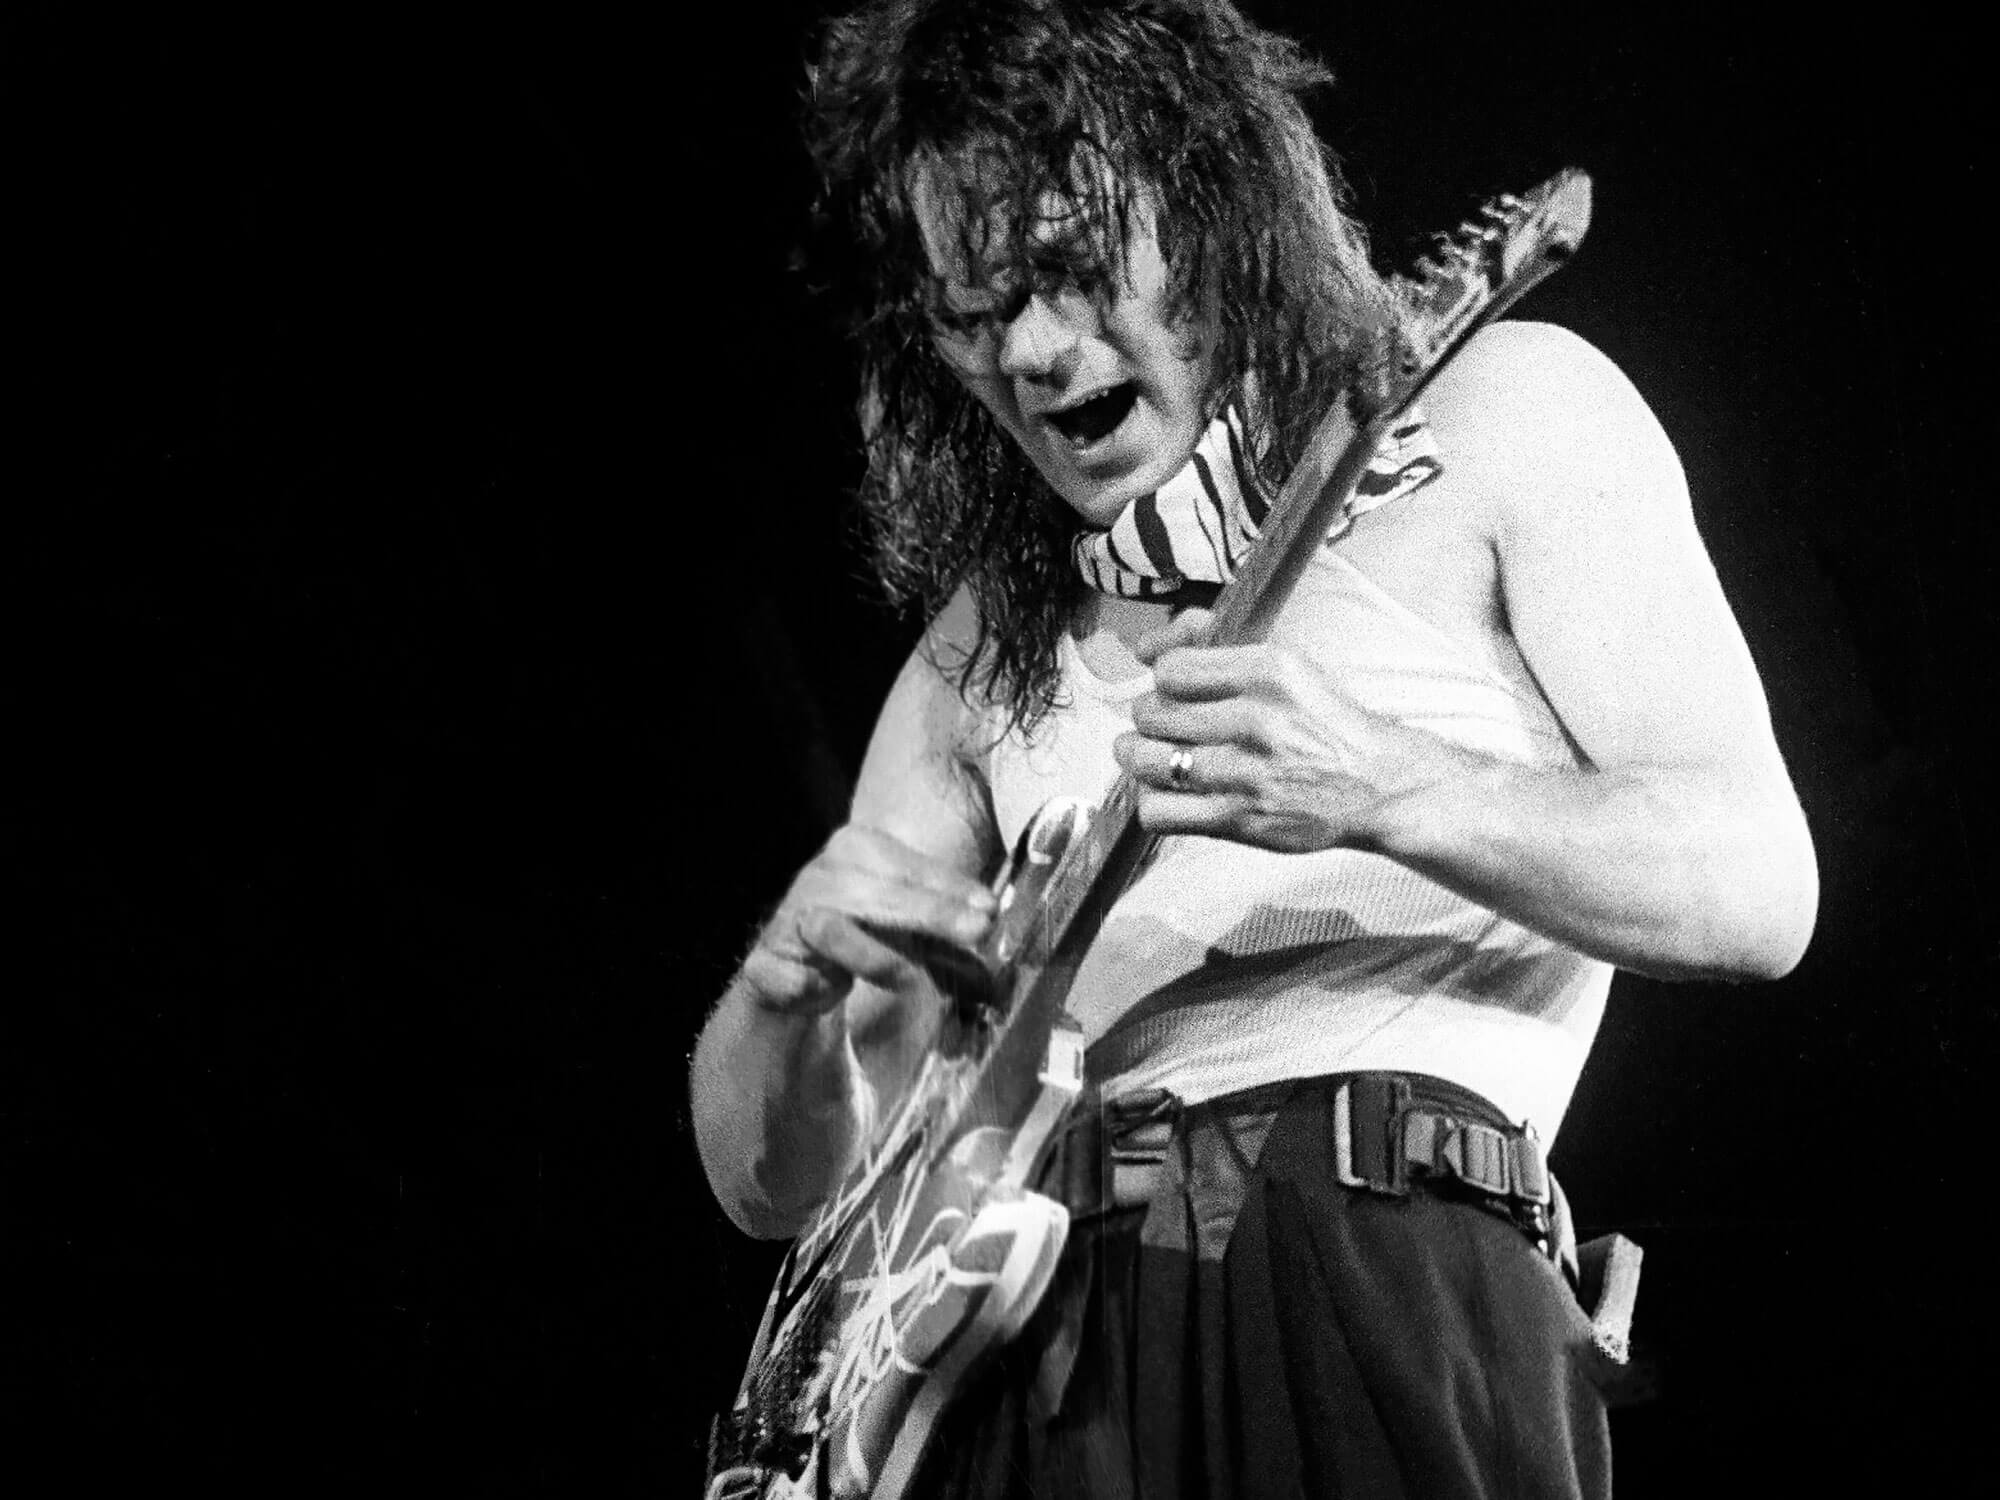 Eddie Van Halen performing live